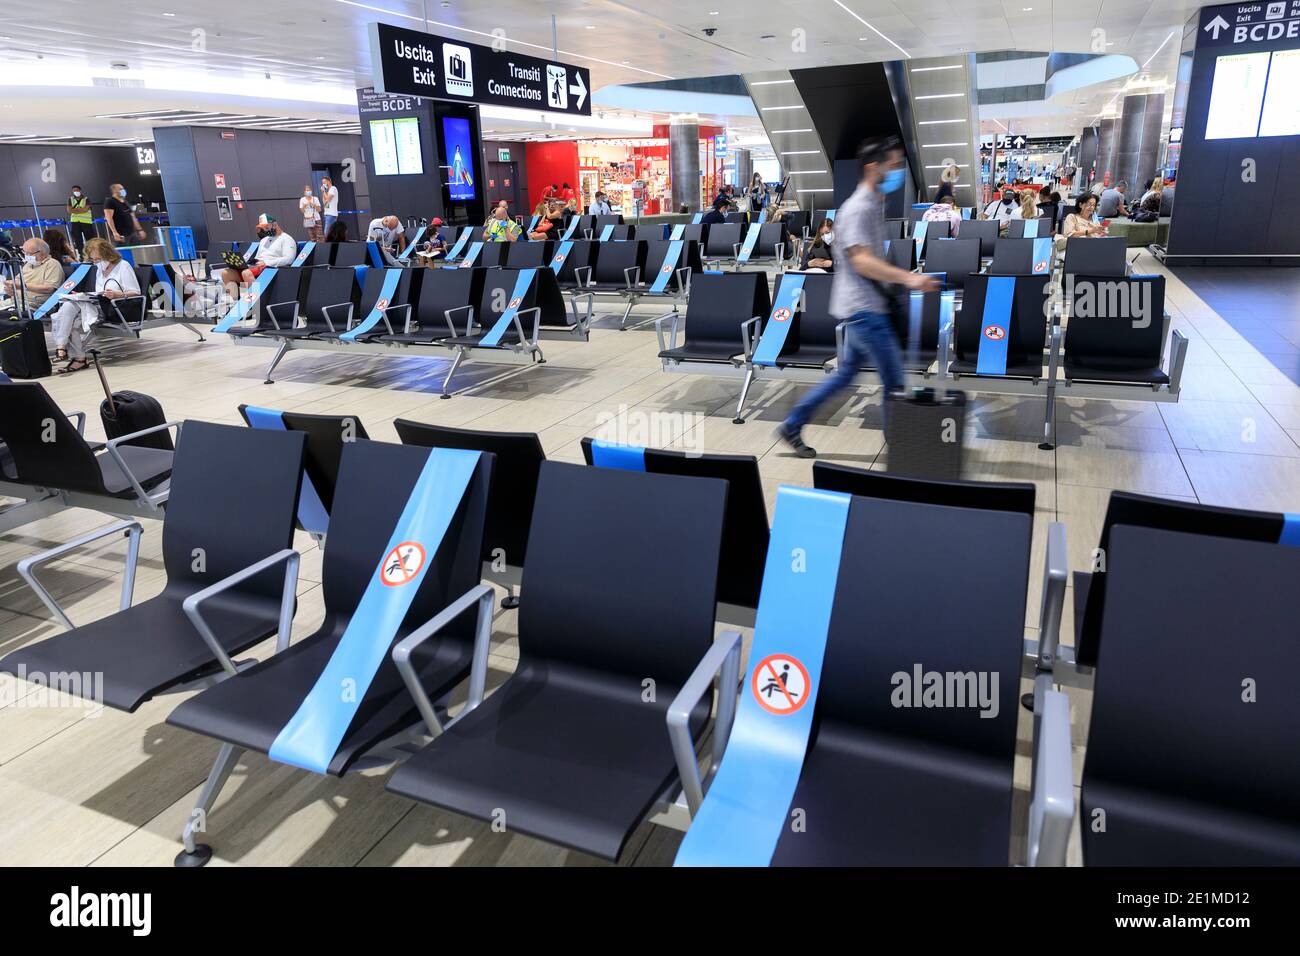 Der Flughafen Leonardo da Vinci in Fiumicino, Italien: Passagiere, die im Terminal auf ihren Flug warten. Einige der Sitze sind wegen des i blockiert Stockfoto